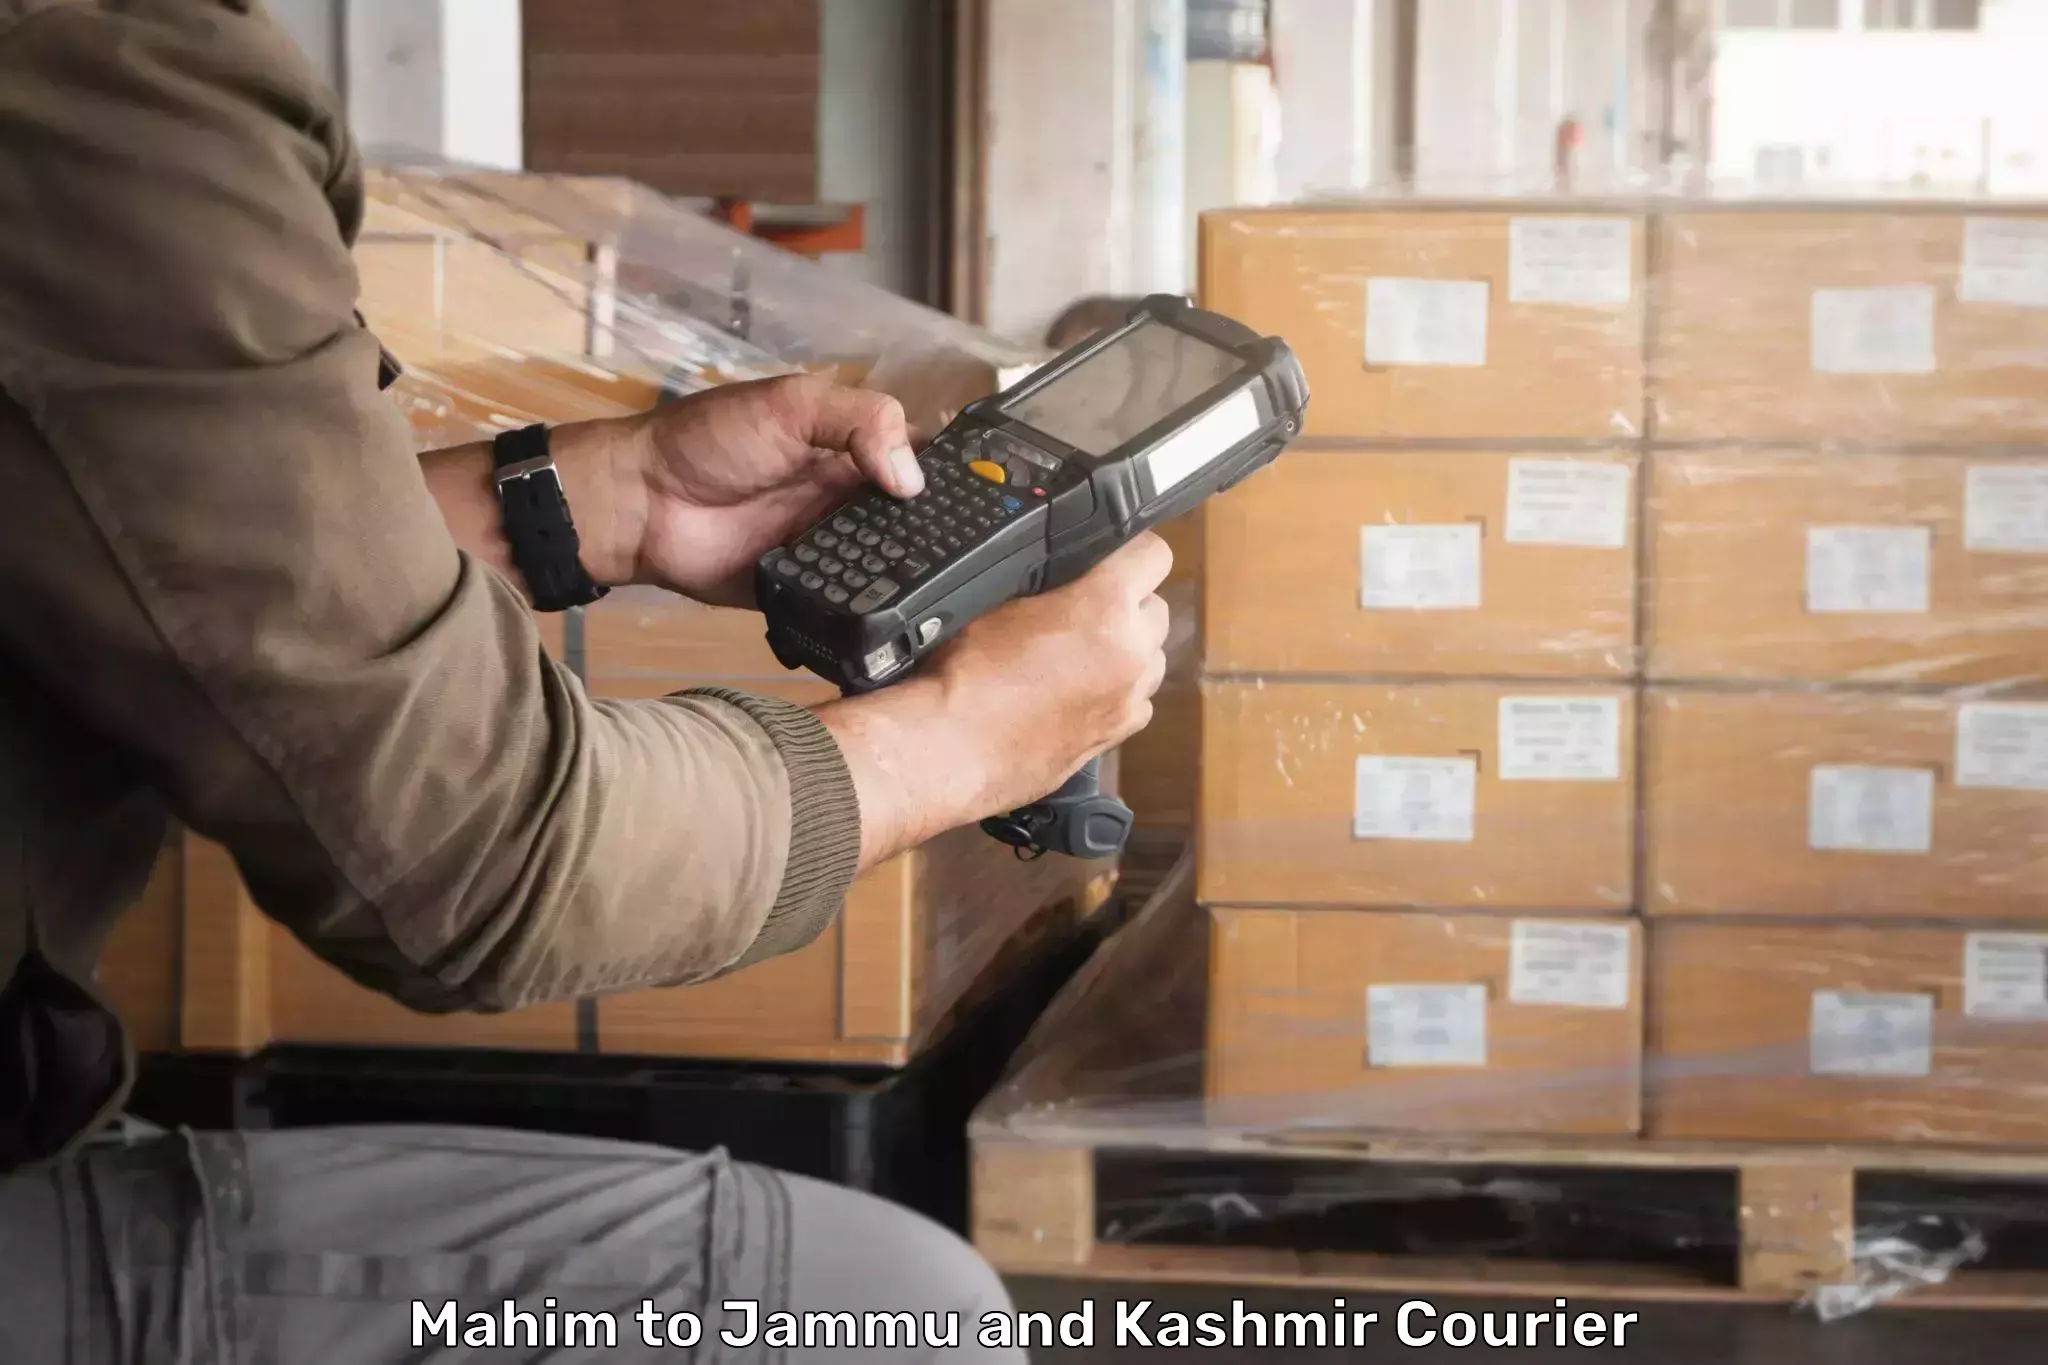 Reliable logistics providers Mahim to Jammu and Kashmir